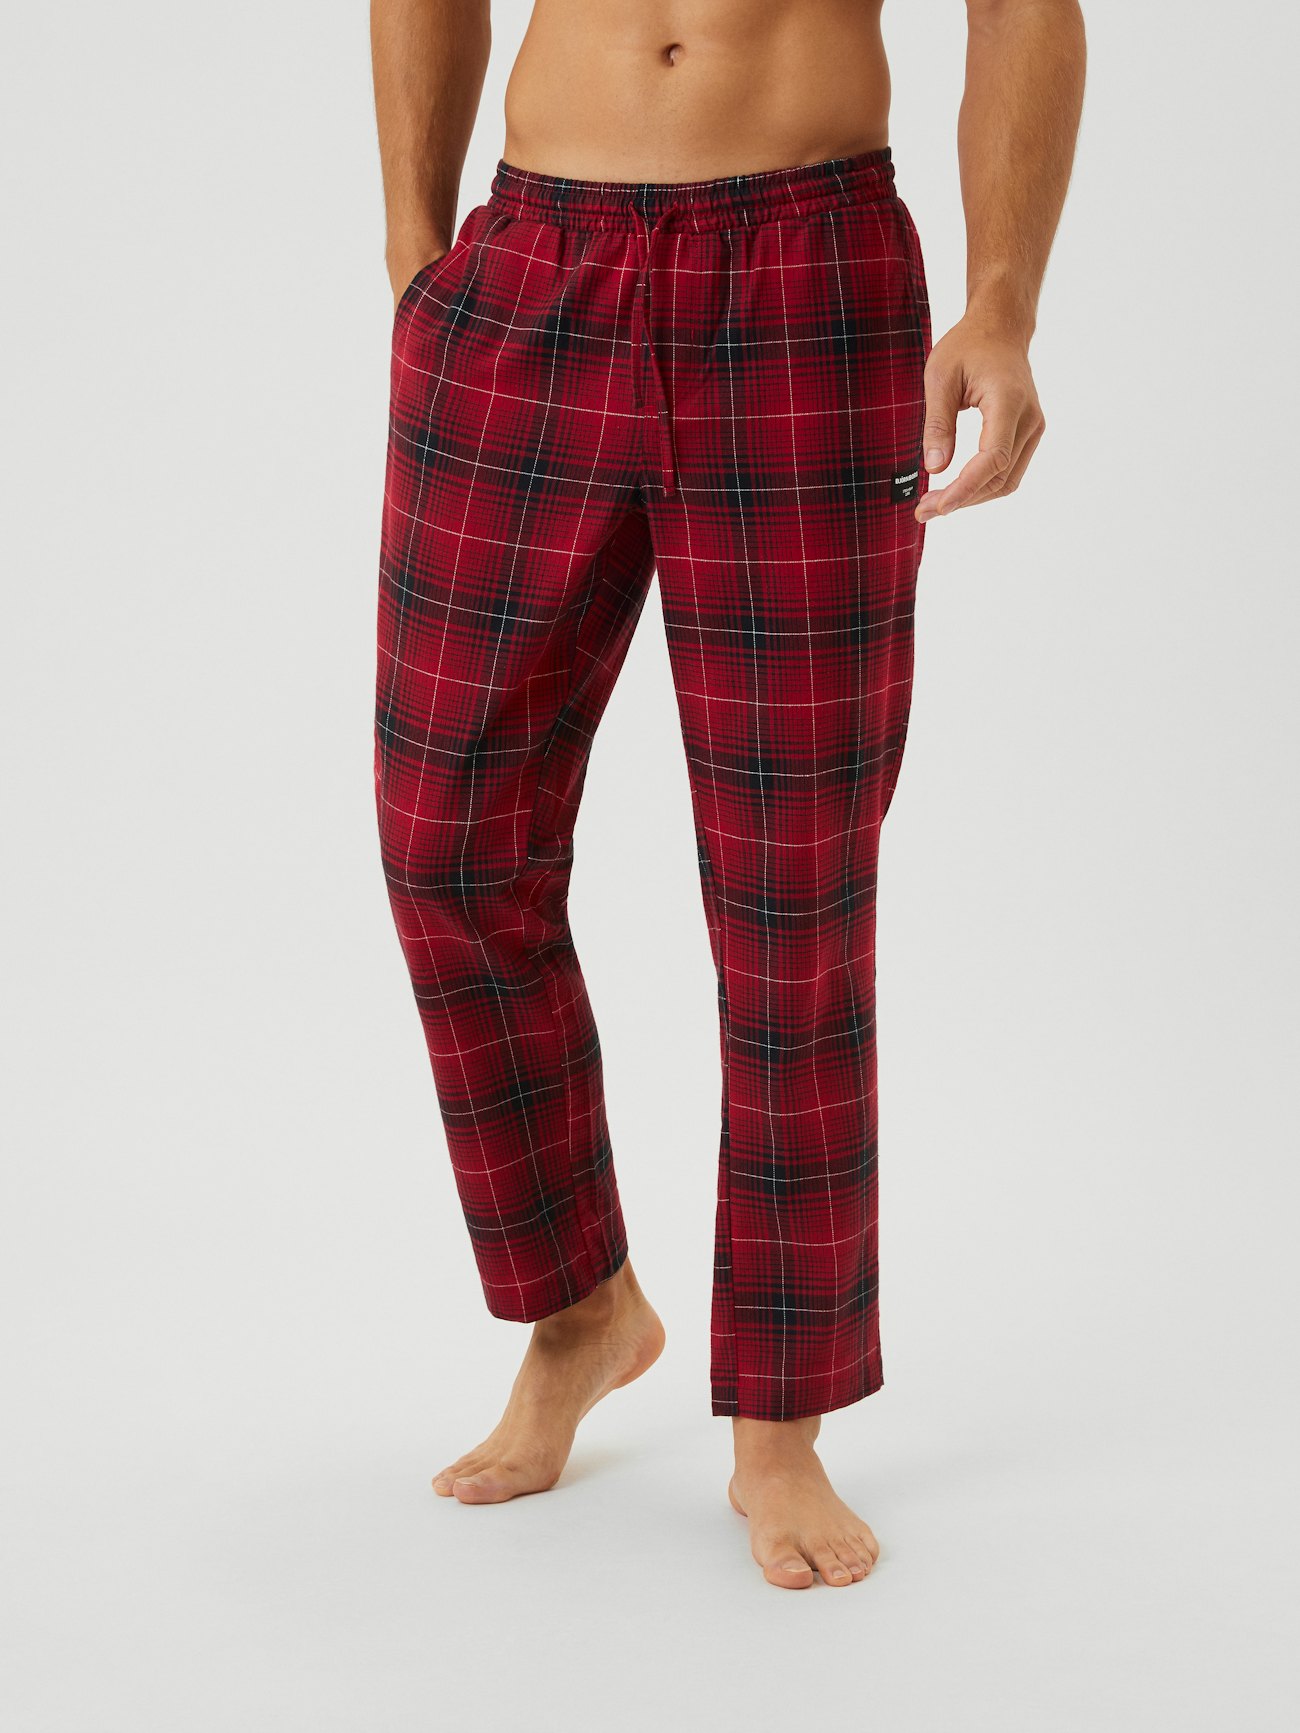 Behoort Slang overhandigen Core Pyjama Pant - Rood | Men | Björn Borg